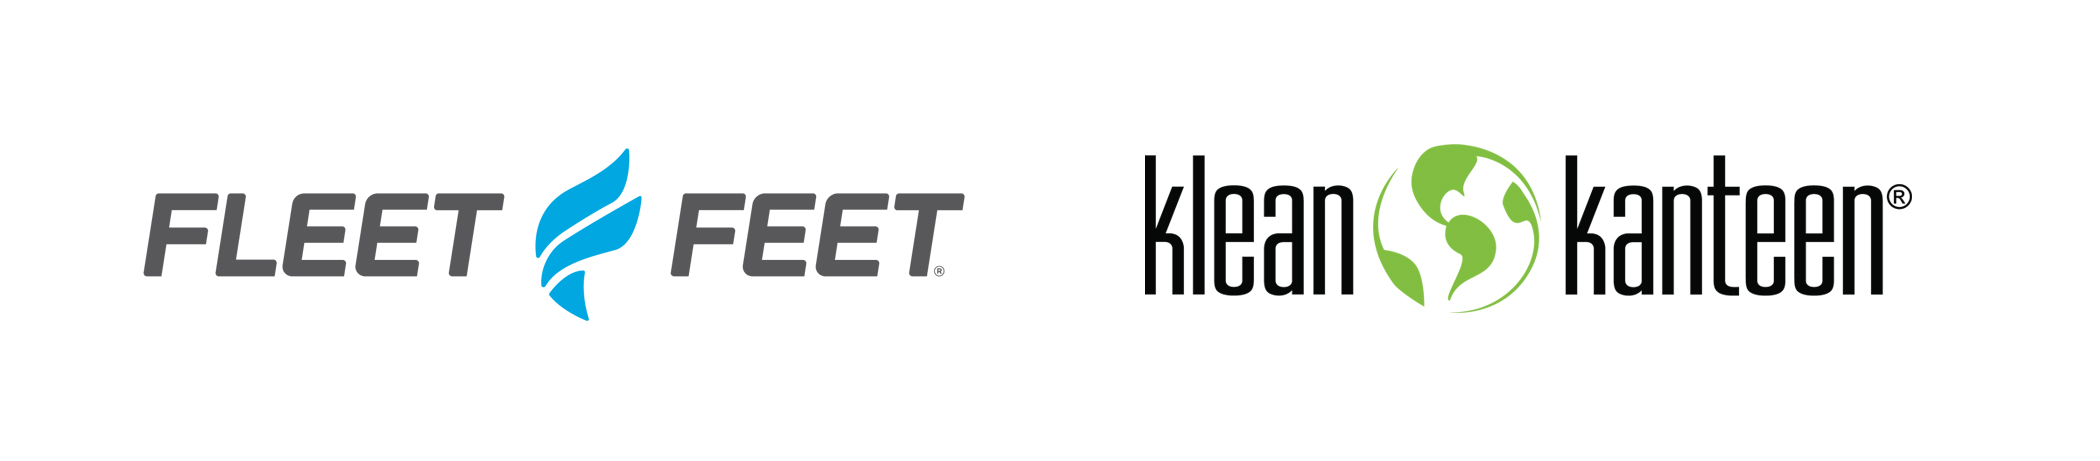 Fleet Feet and Klean Kanteen logos